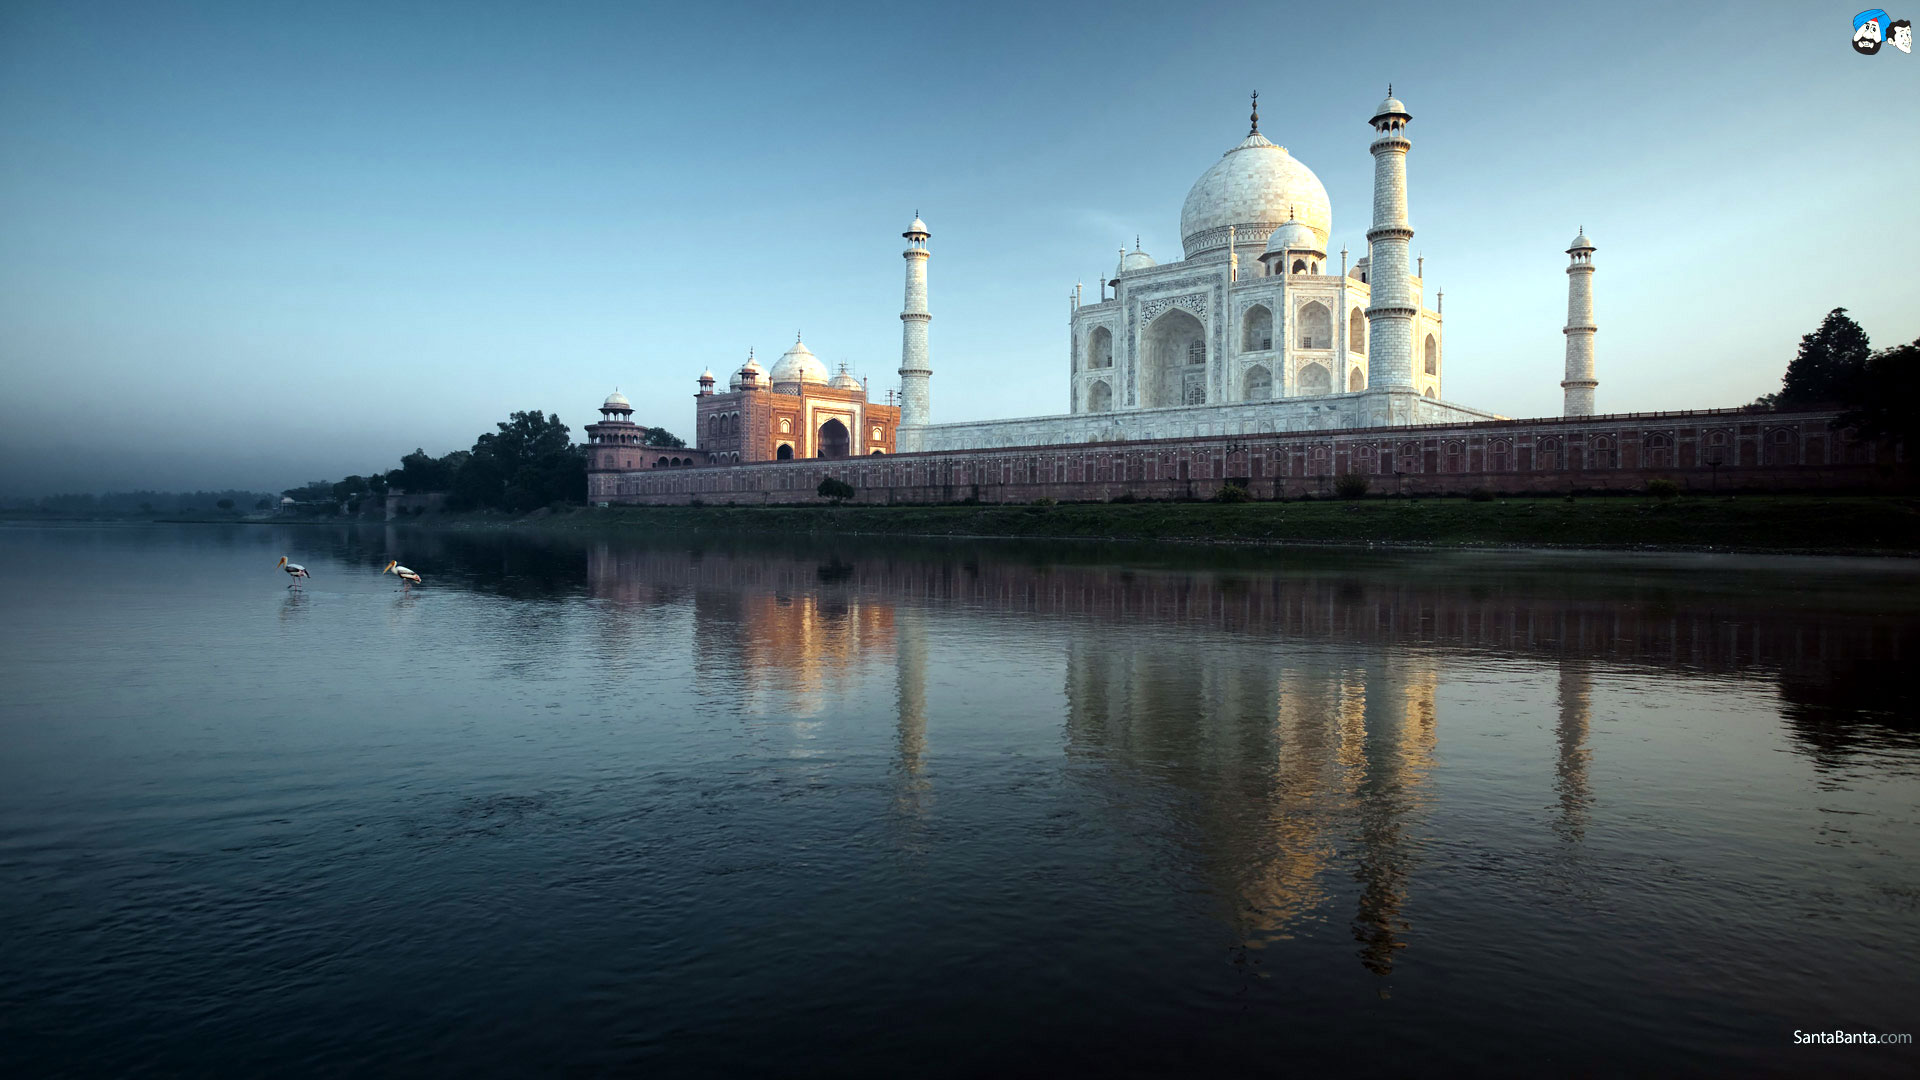 Santa Banta Taj Mahal Wallpapers Hd Free Download